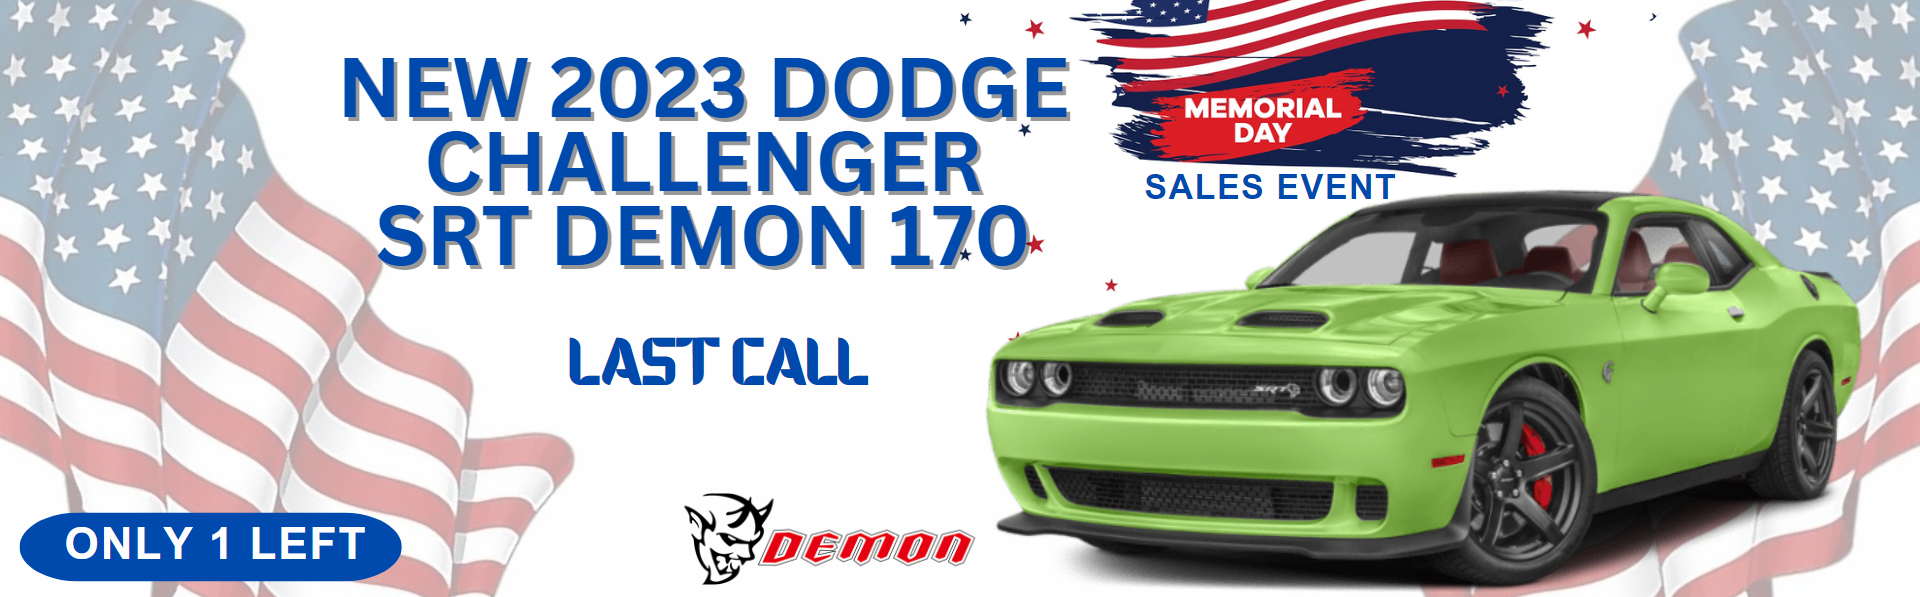 New 2023 Dodge Challenger SRT Demon 170